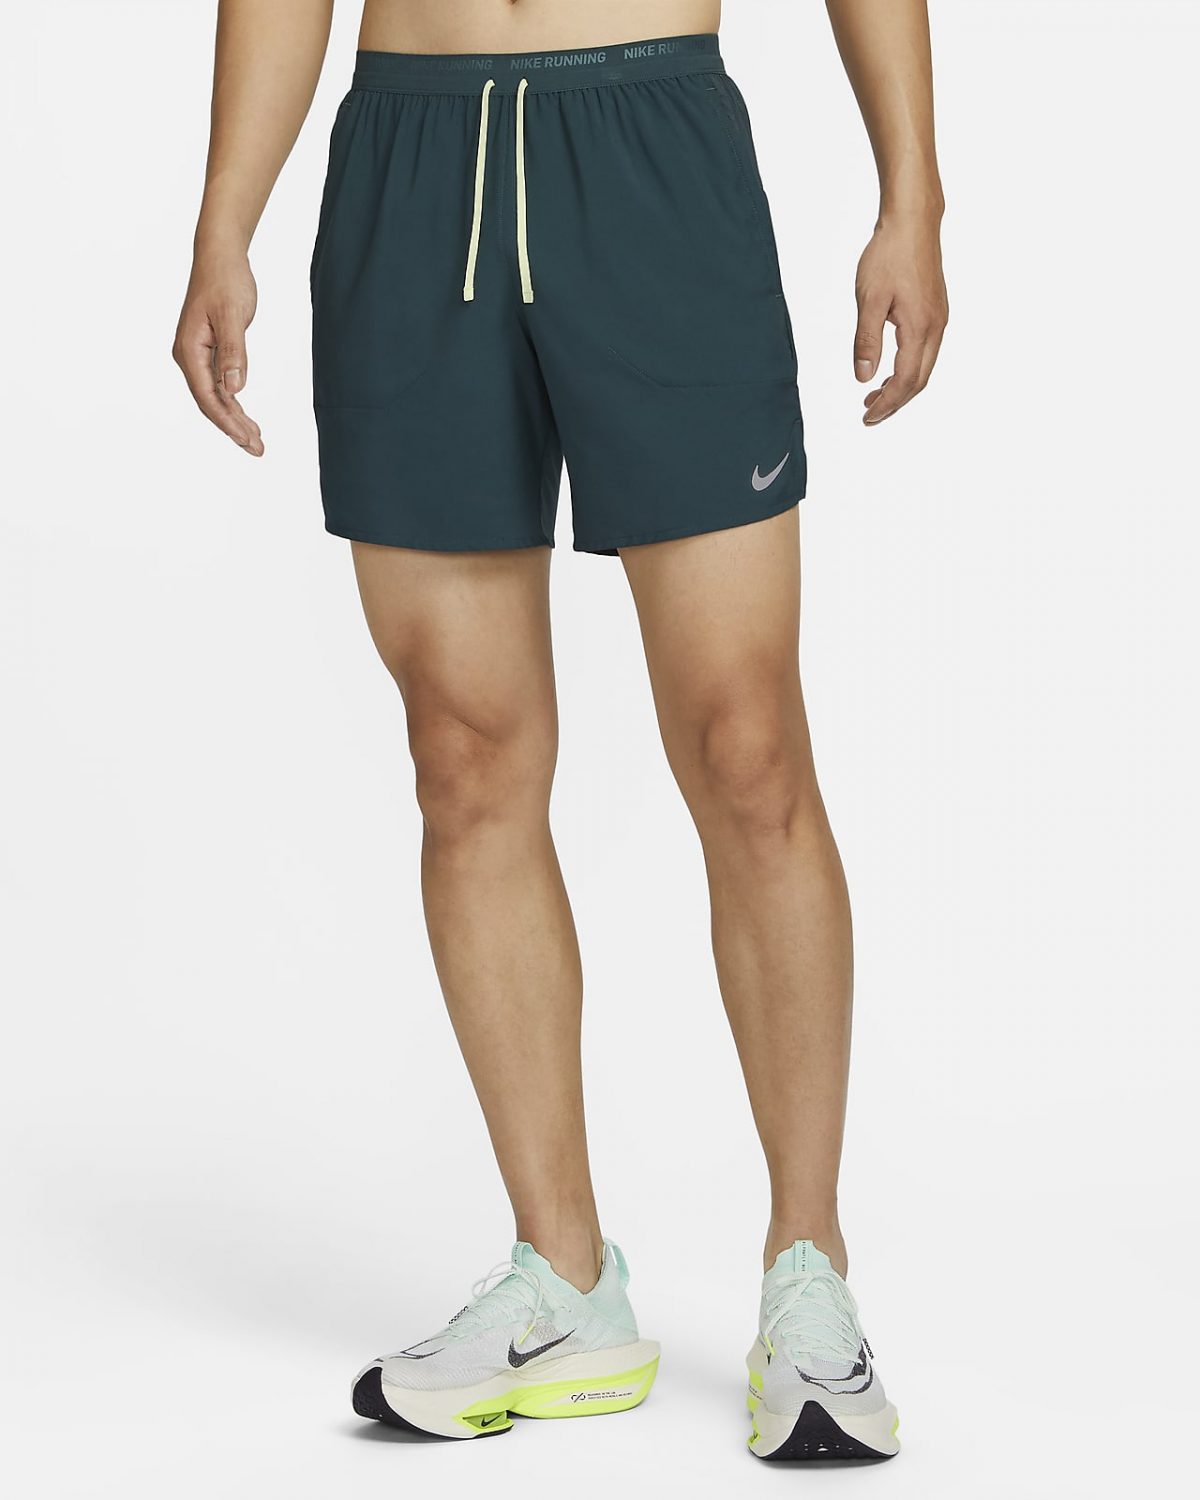 Мужские шорты Nike Dri-FIT Stride фото